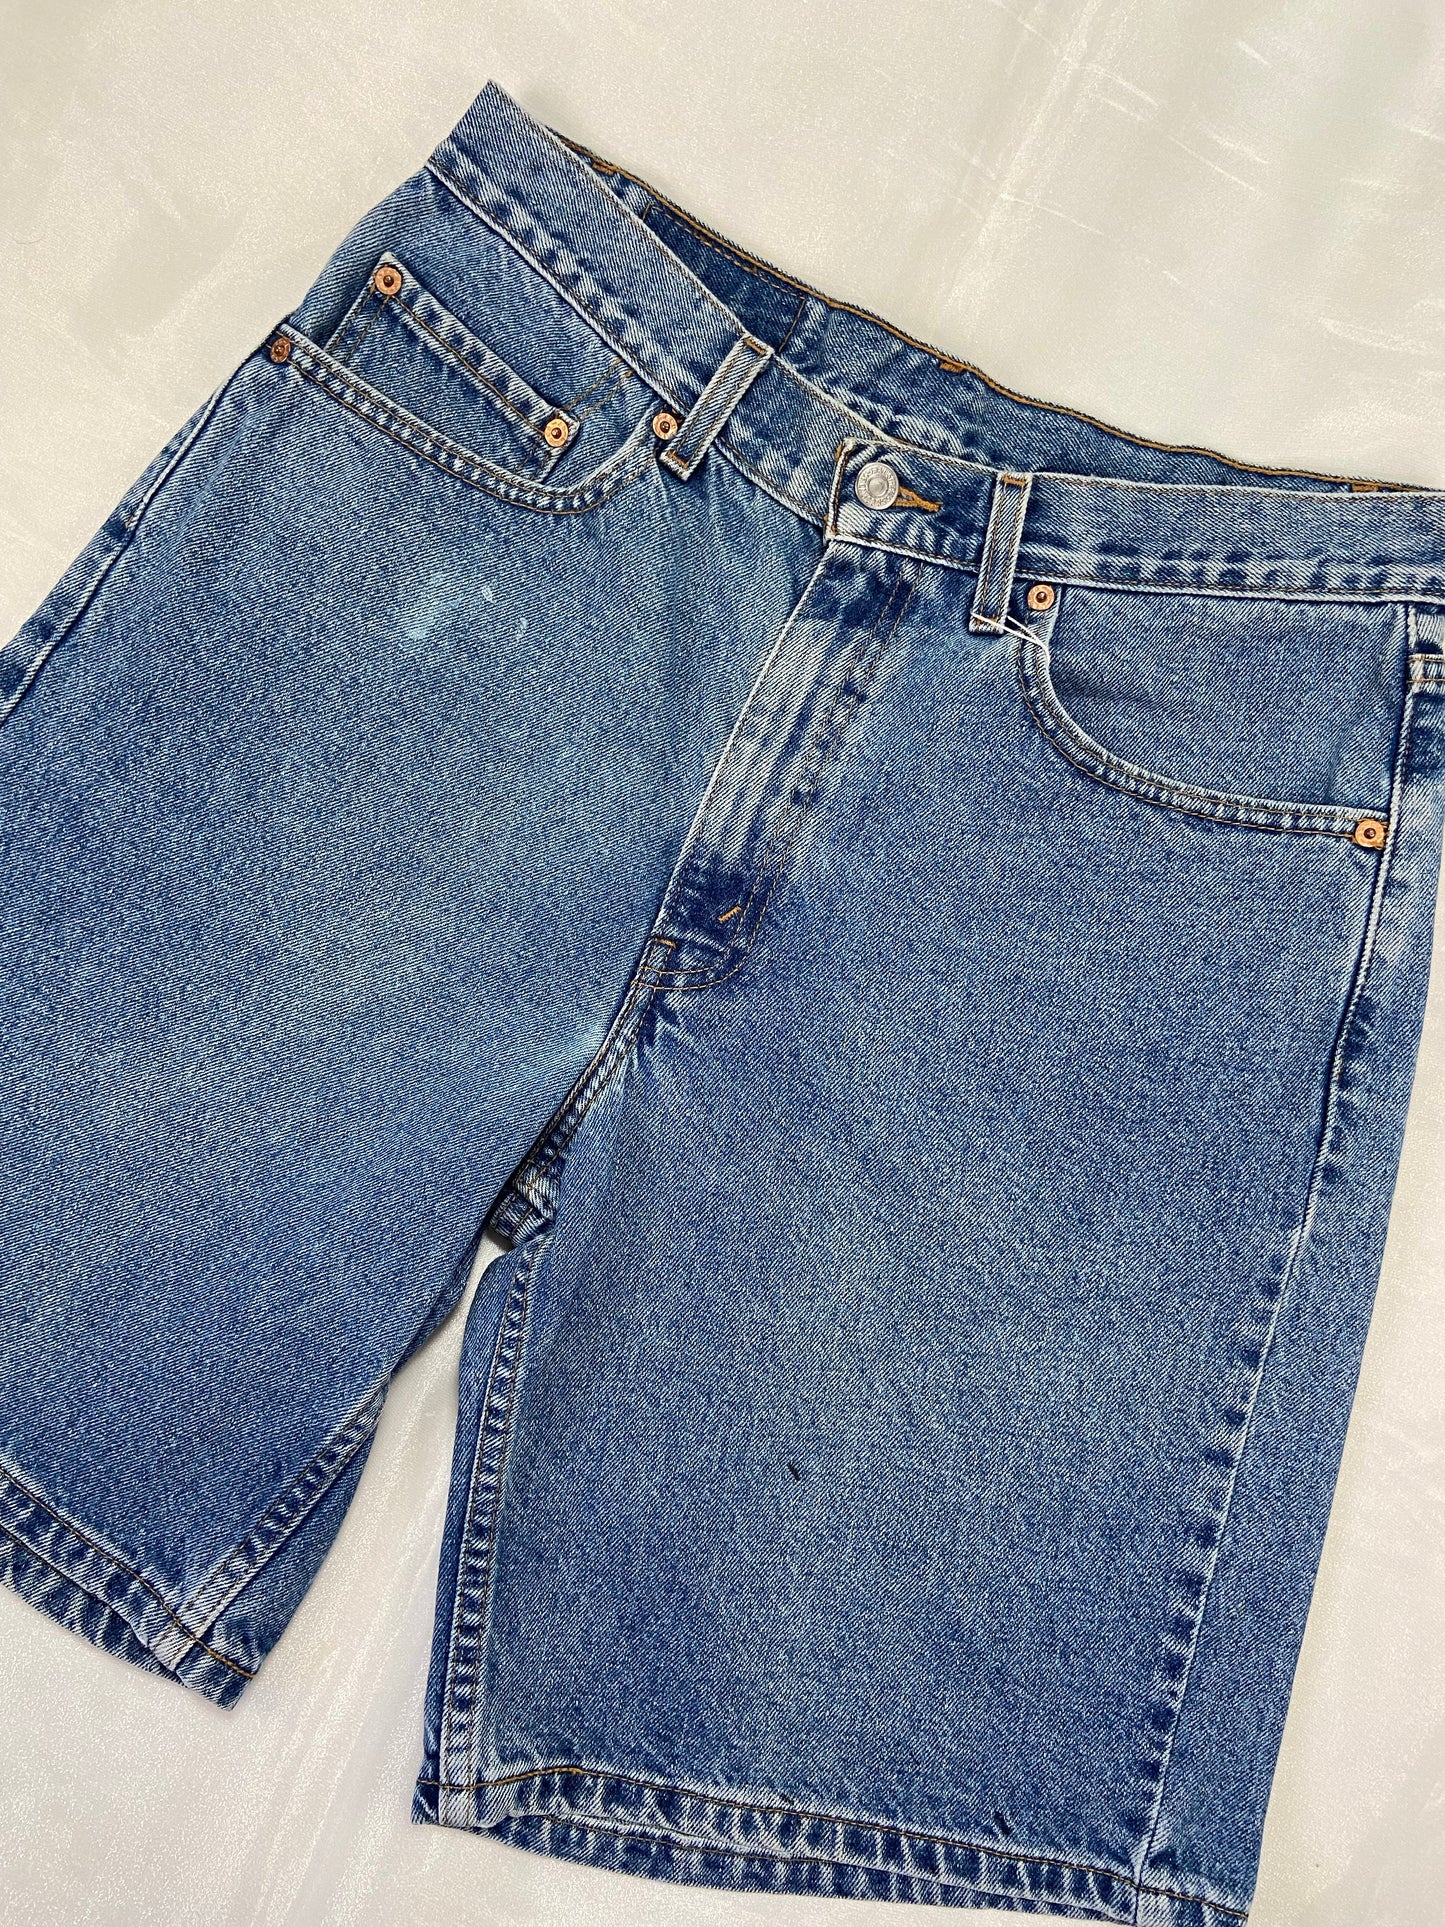 550 Levi’s Medium Wash Denim Shorts - 32”